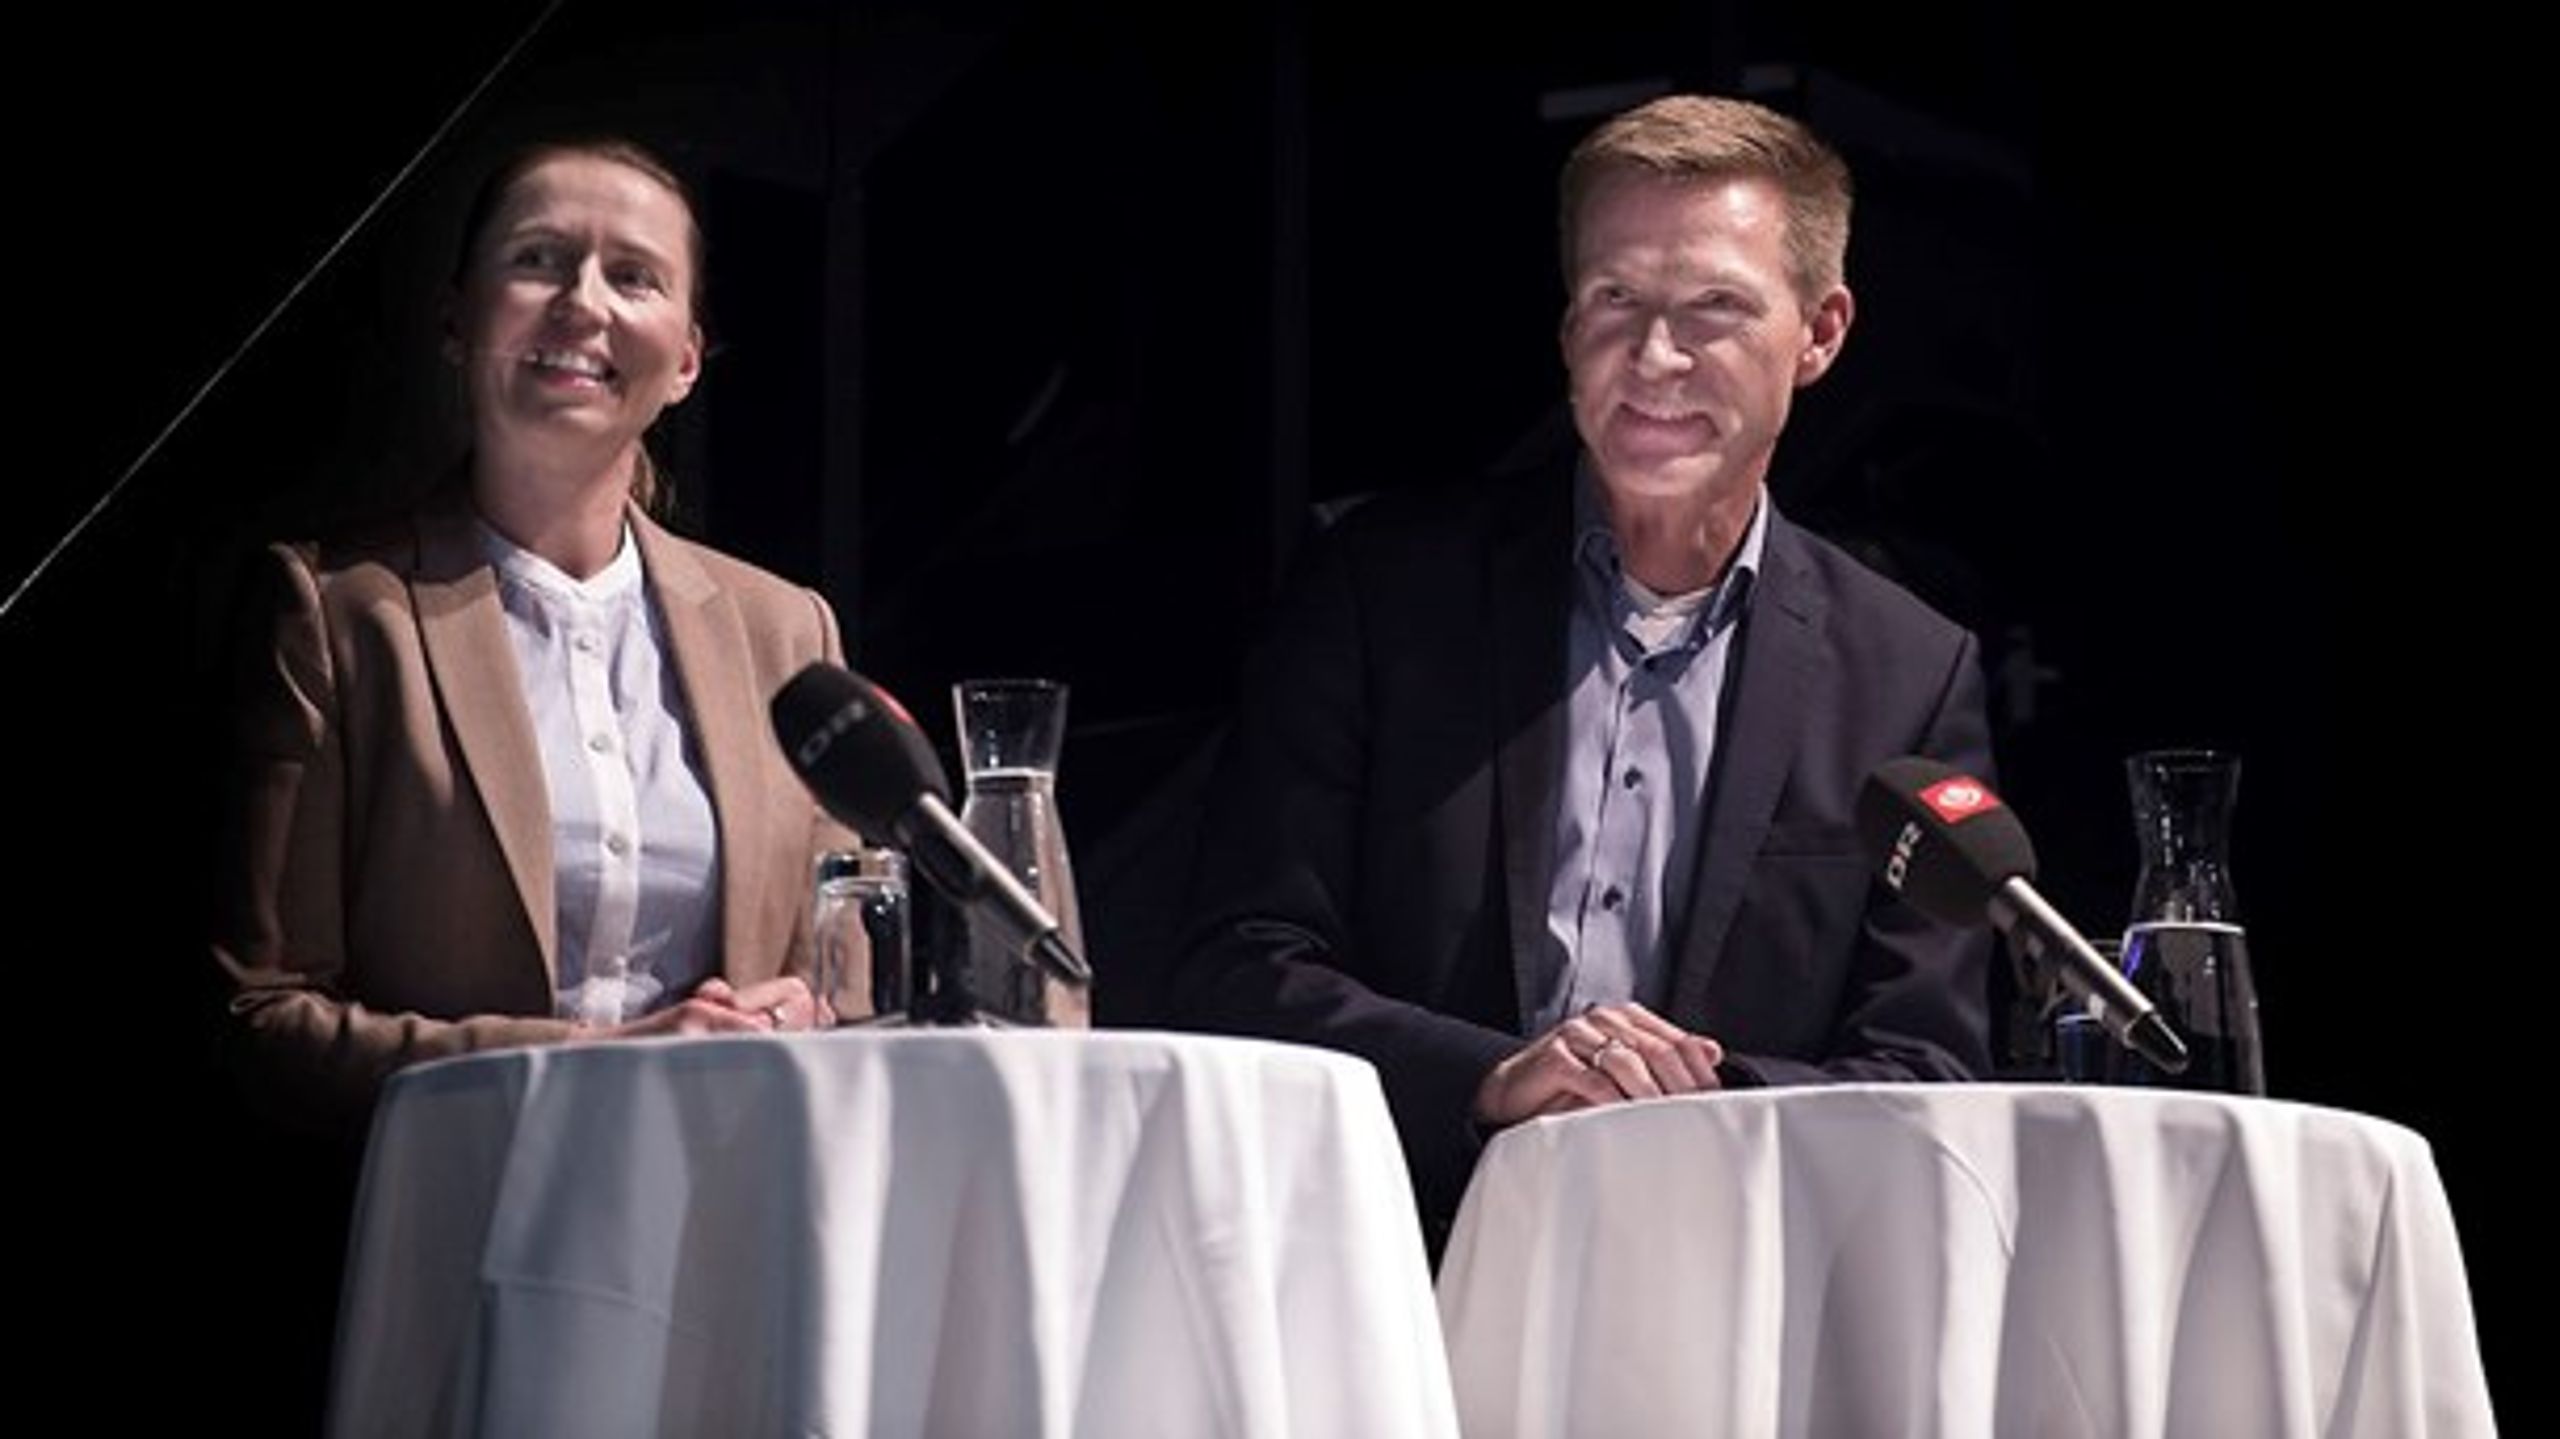 De to partiformand kunne ikke skjule begejstringen over, at regeringen har droppet forslaget om at hæve pensionsalderen for alle danskere.